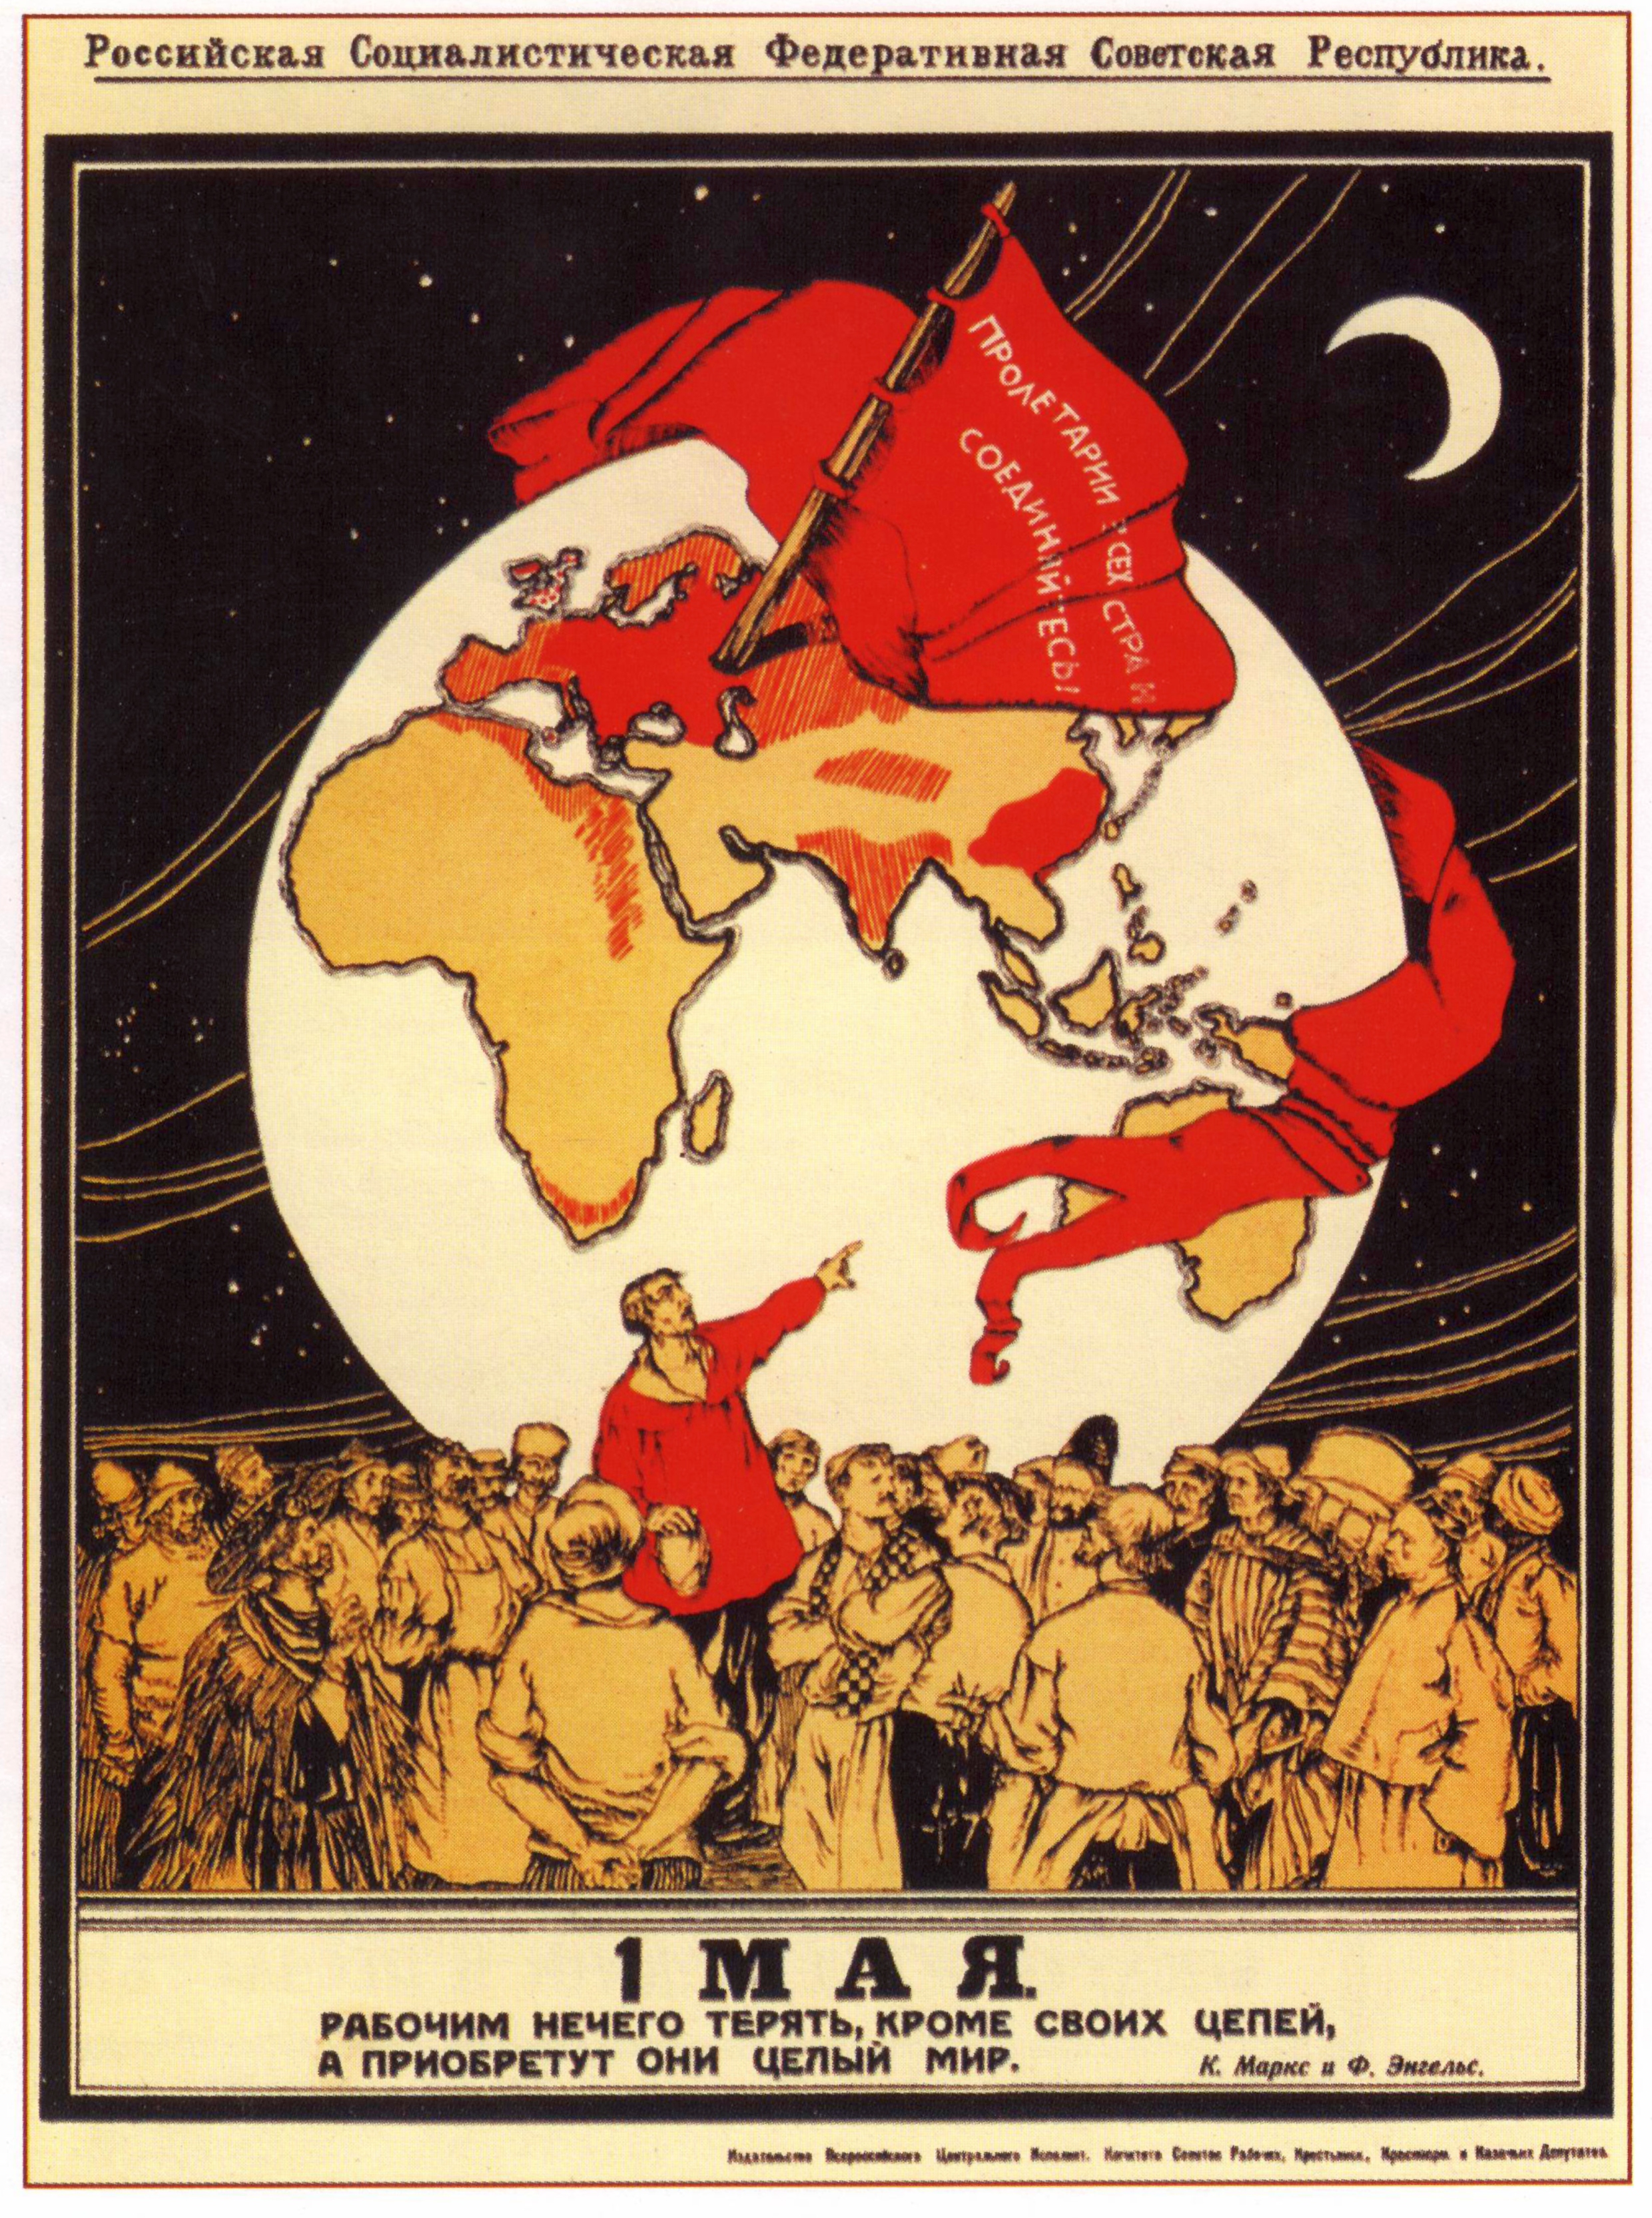 苏俄1920年代五一劳动节海报：红旗上书「全世界无产者，联合起来！」「五月一日」 「无产者在这个革命中失去的只是锁链。他们获得的将是整个世界。」 ——马克思、恩格斯